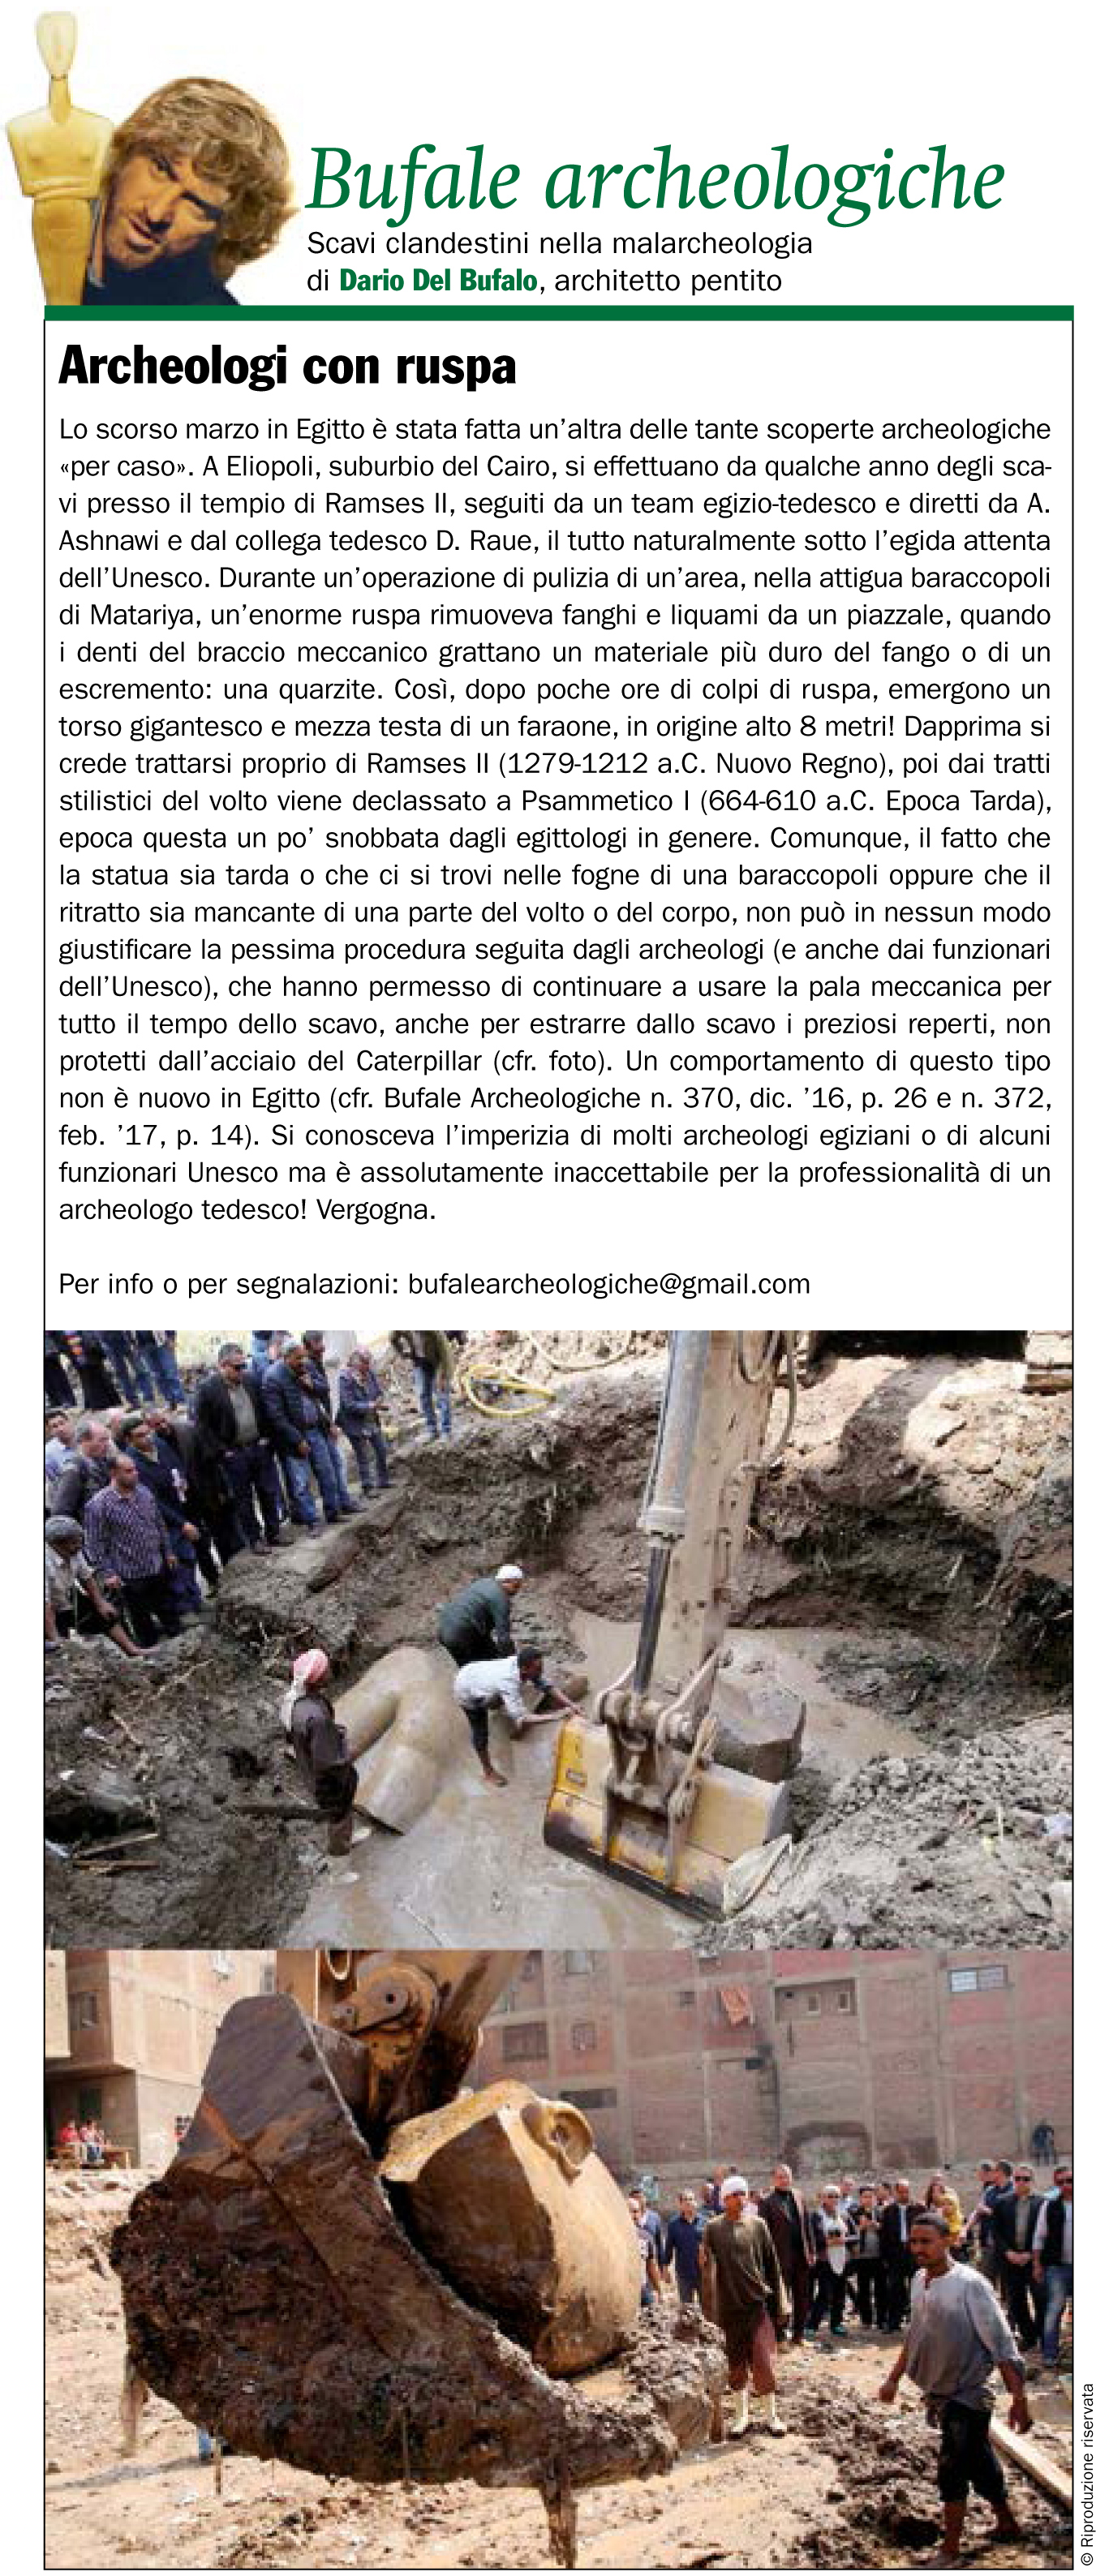 Bufale-Archeologiche-Giugno-2017-Giornale-dellArte-Dario-Del-Bufalo